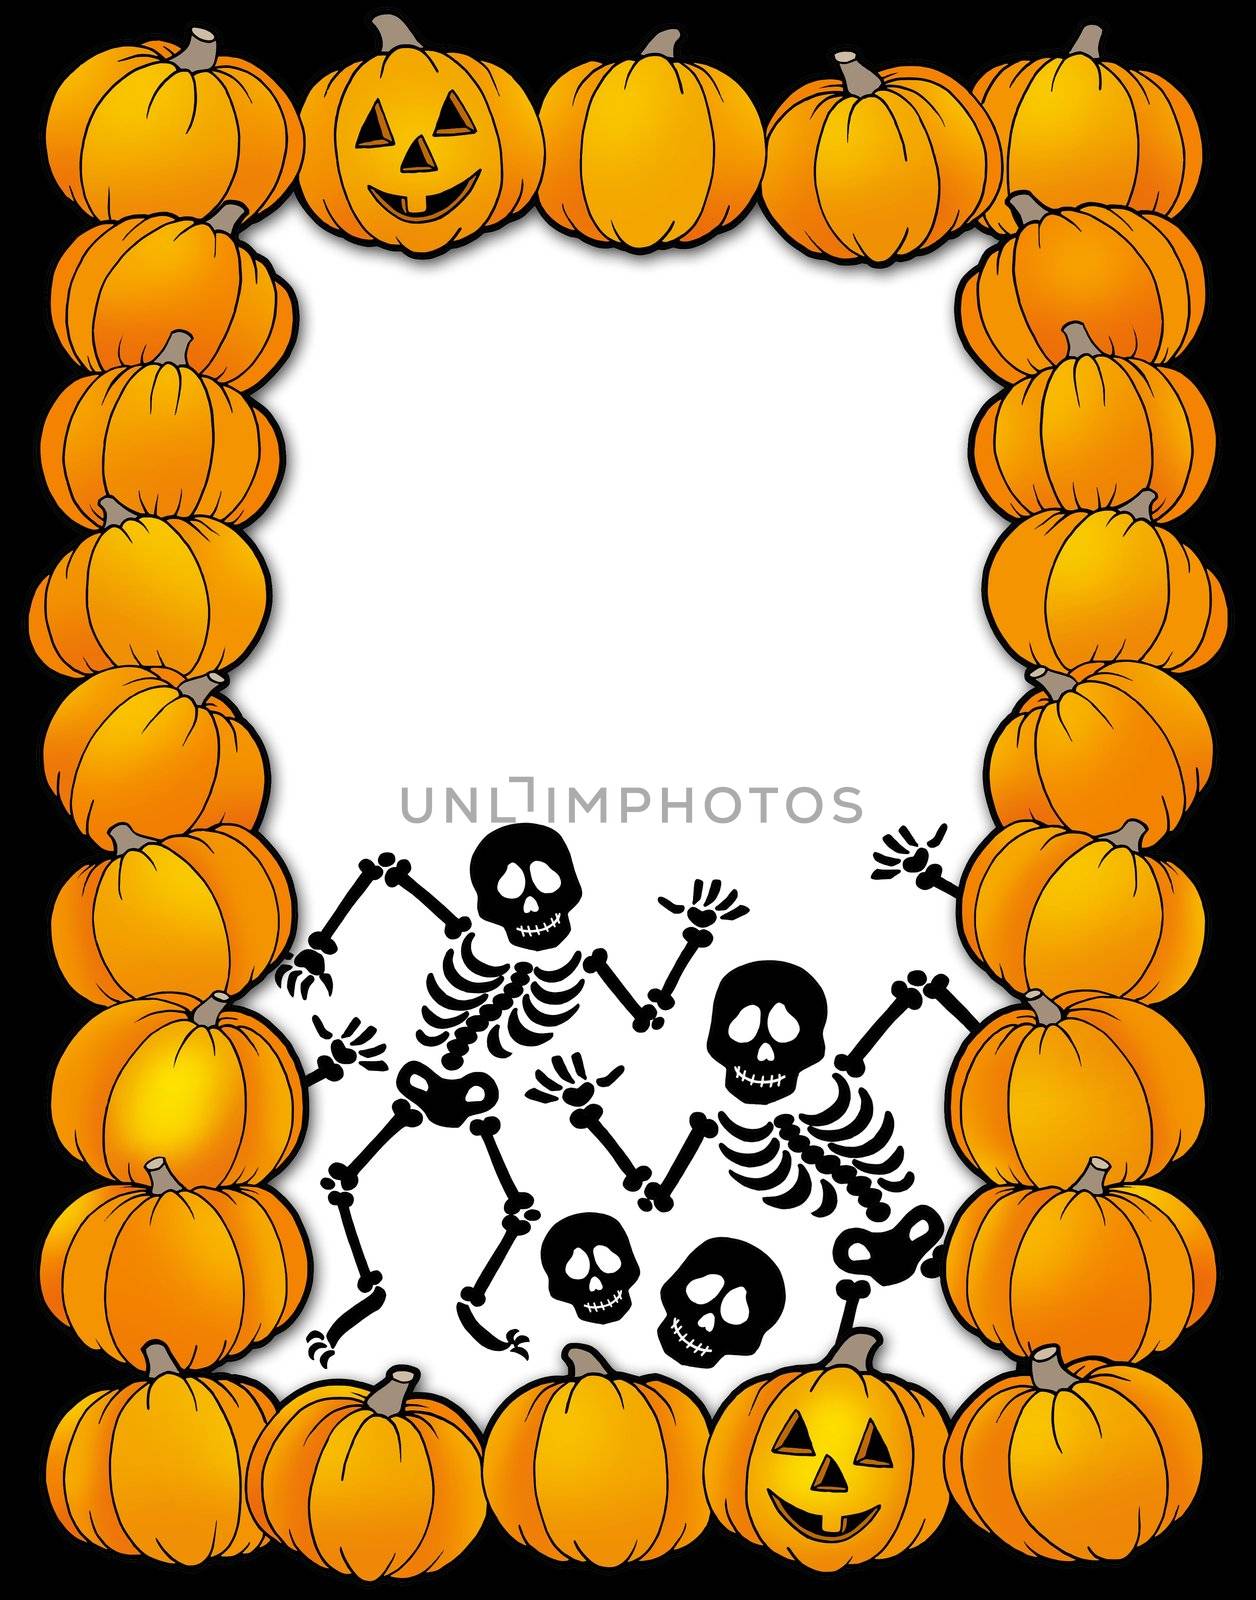 Halloween frame with skeletons - color illustration.